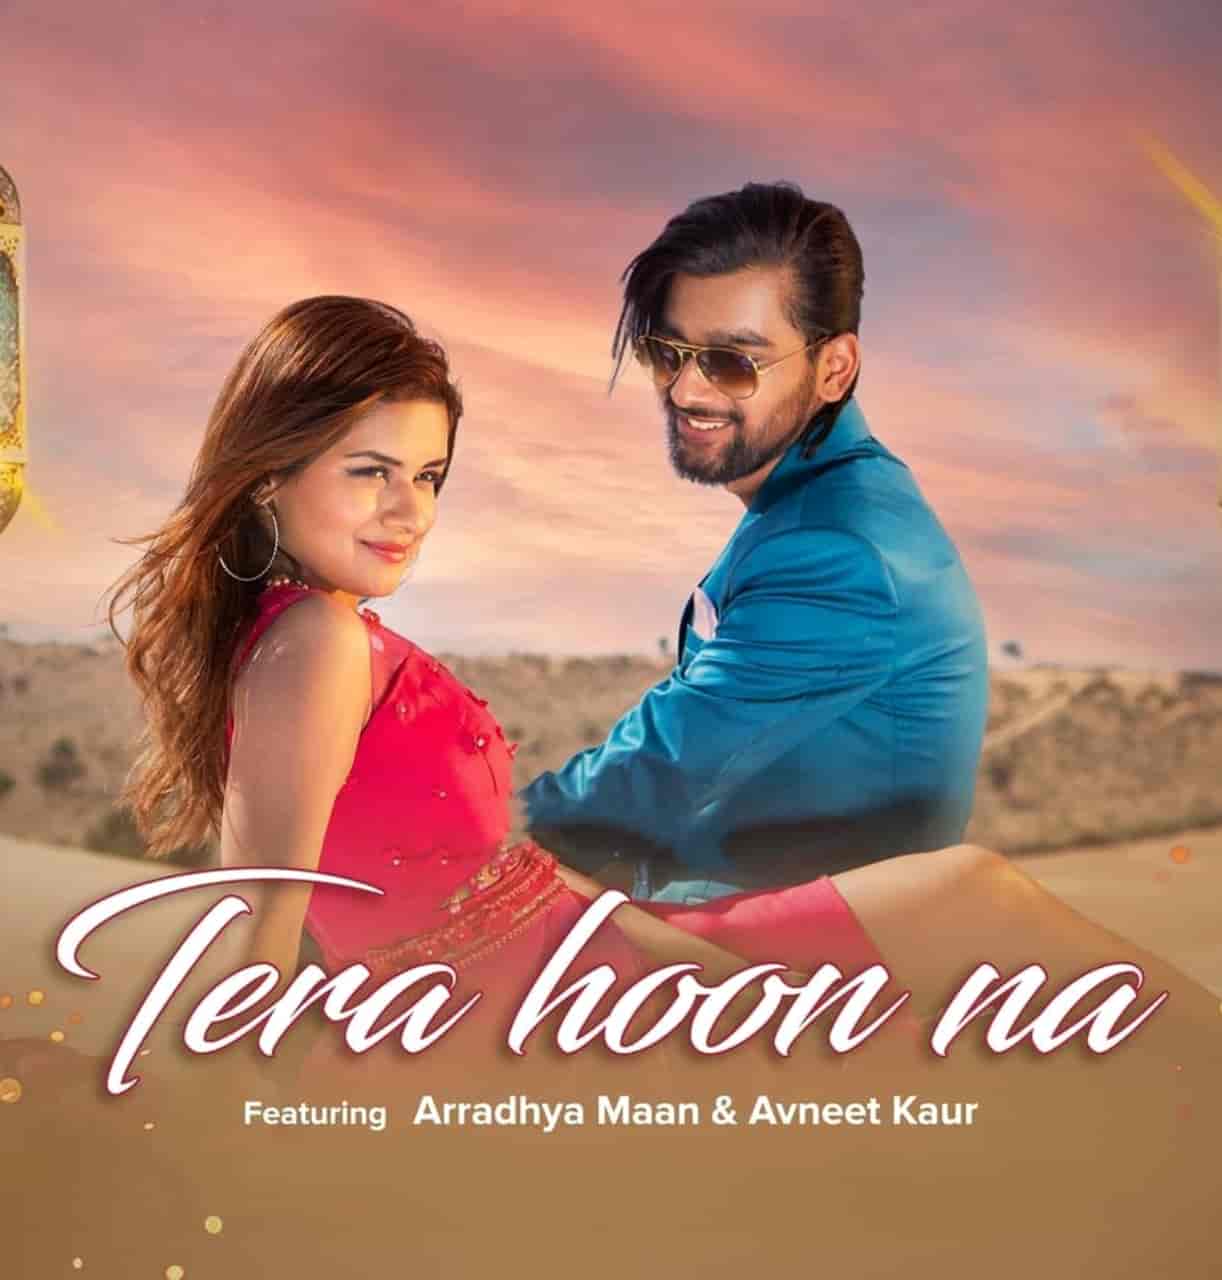 Tera Hoon Na Hindi Song Image Features Avneet Kaur